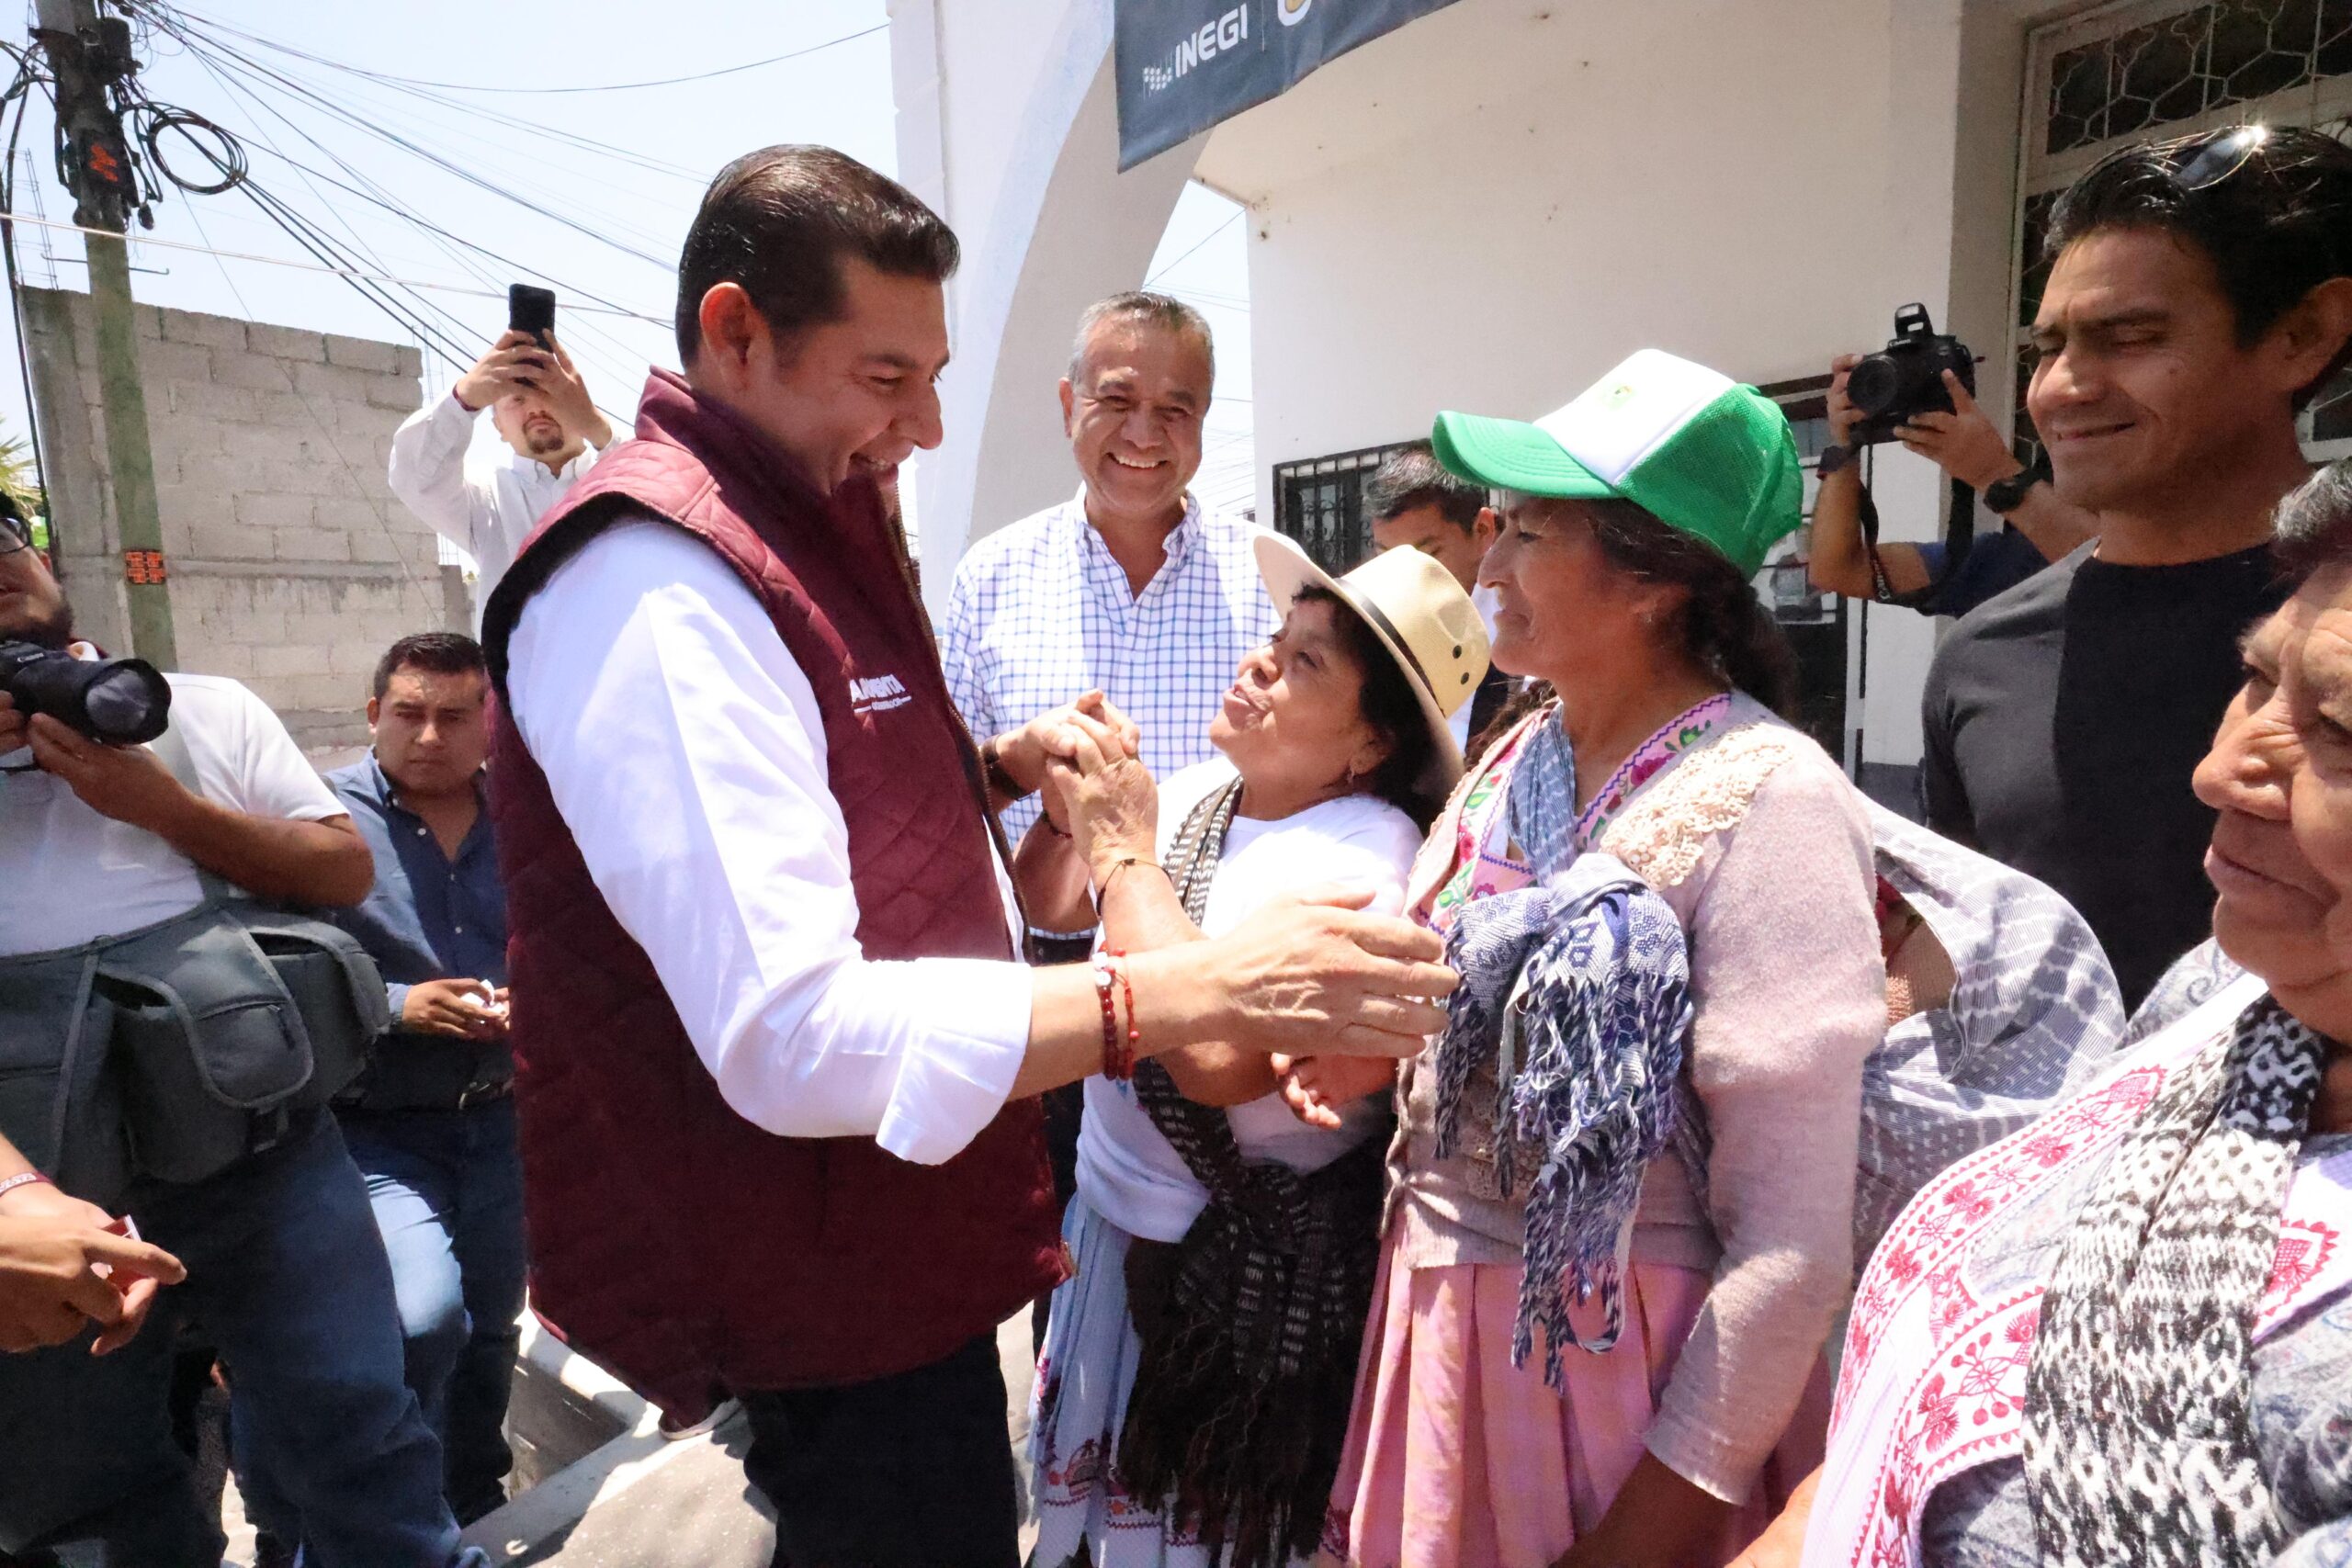 Alejandro Armenta propone integrar las tradiciones de los pueblos originarios en la ruta turística de Puebla